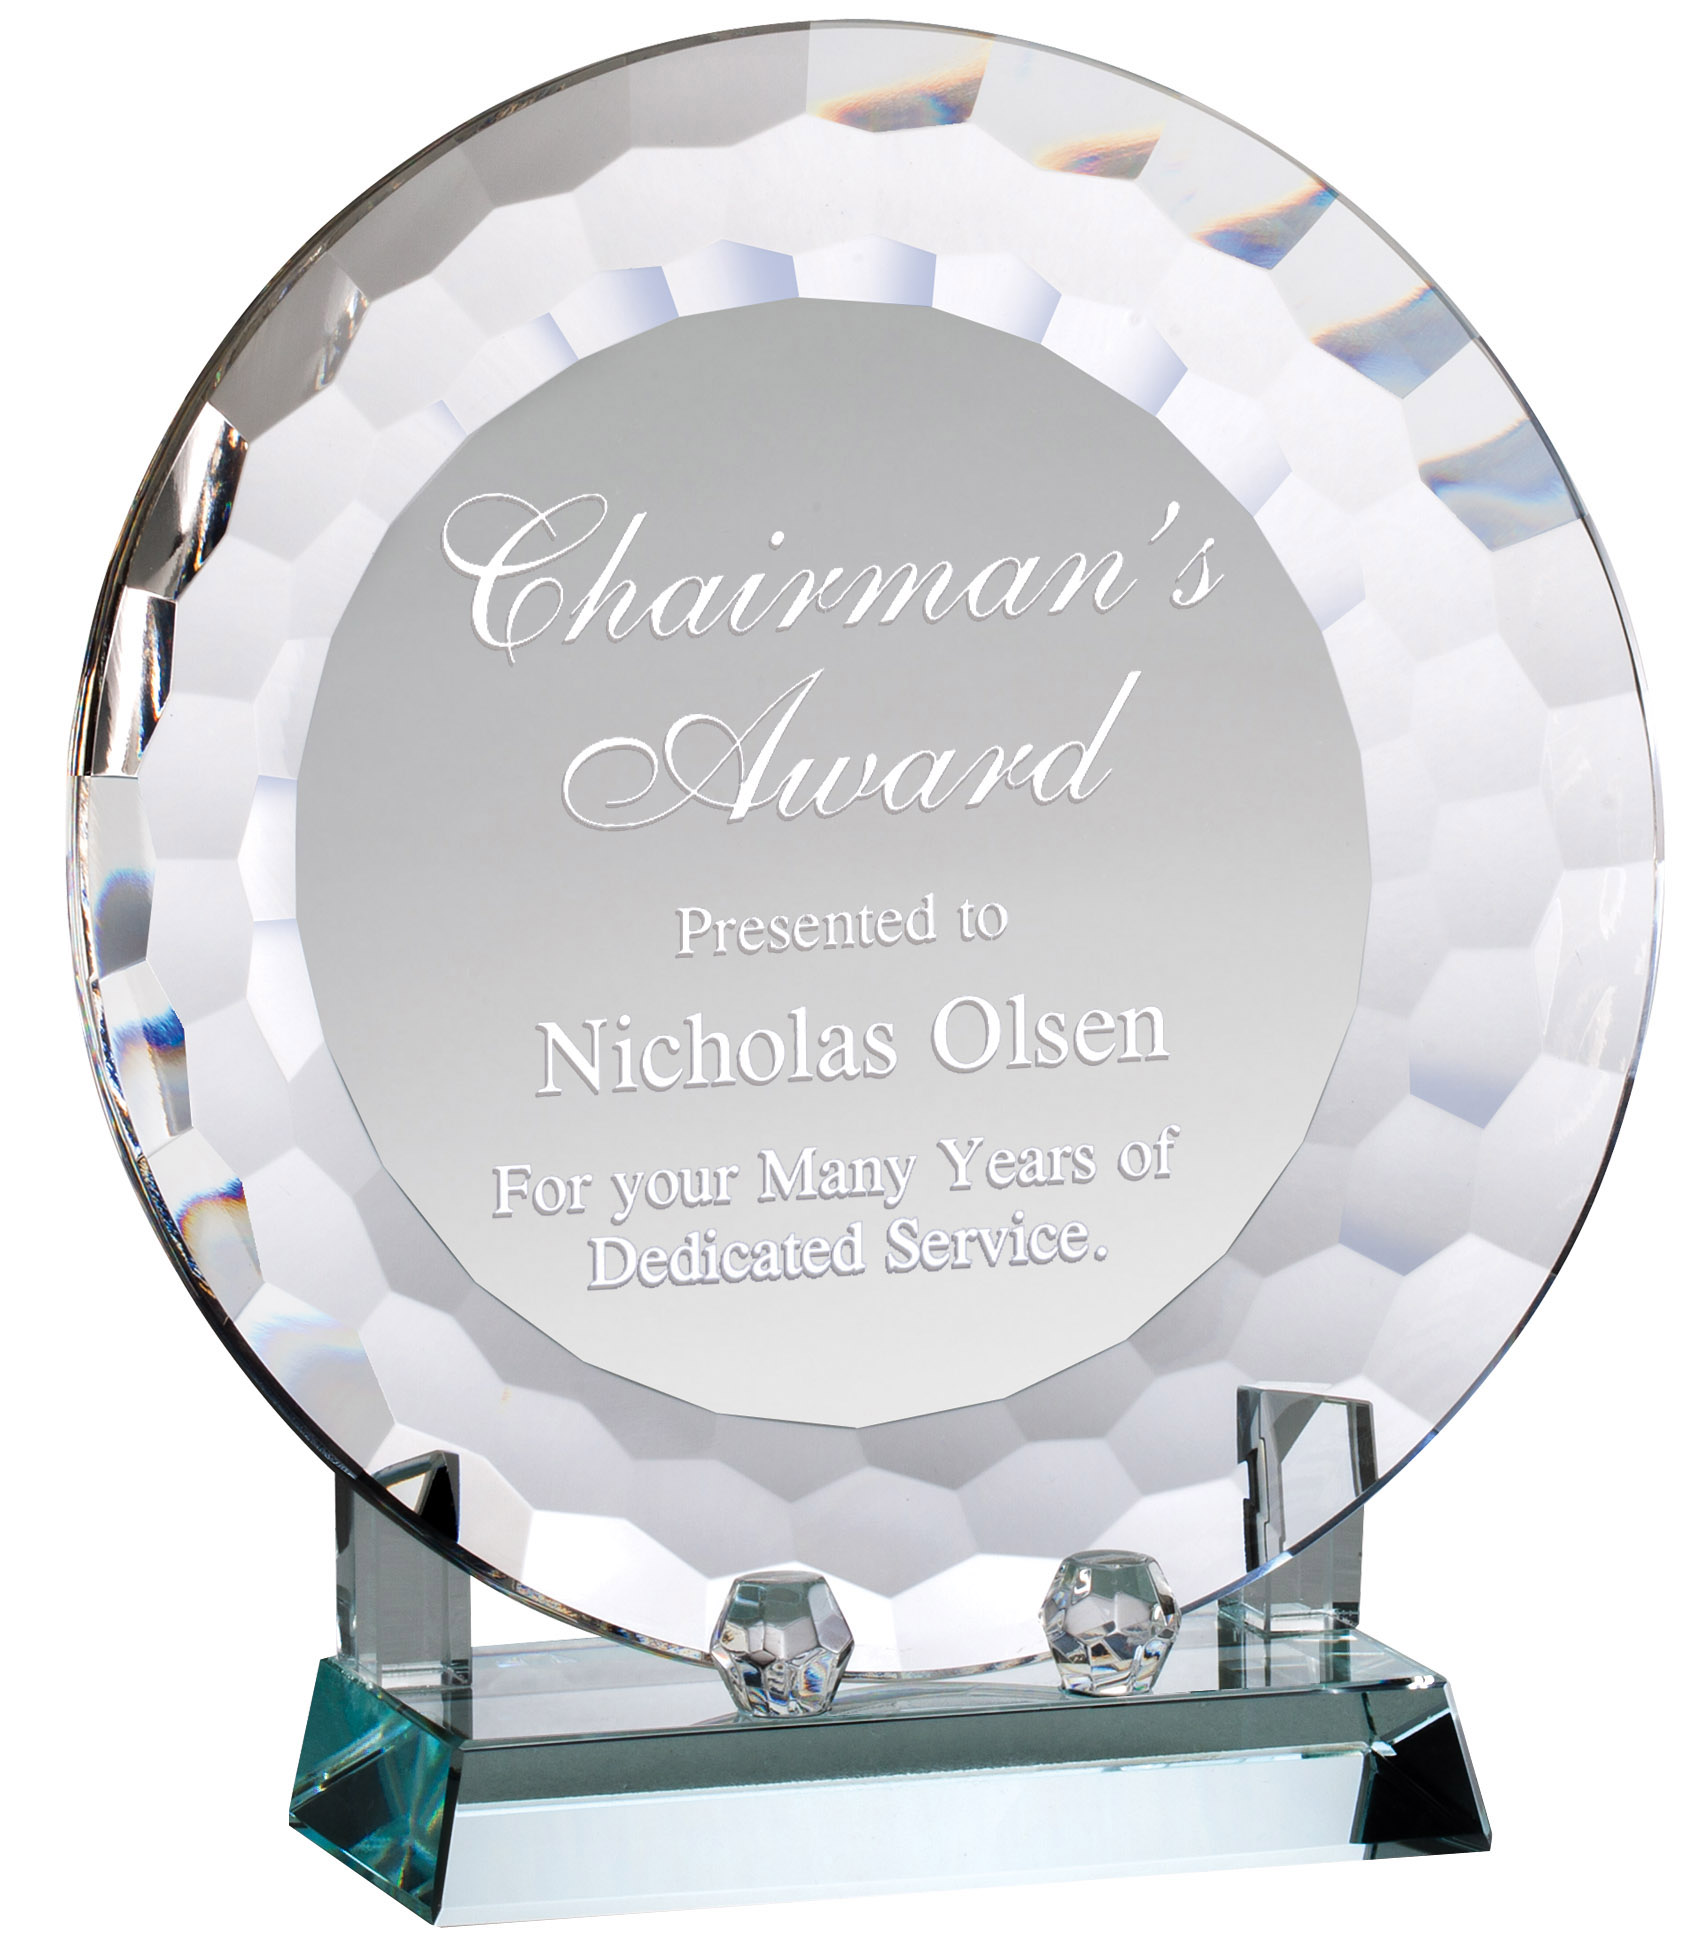 Chairman's Award